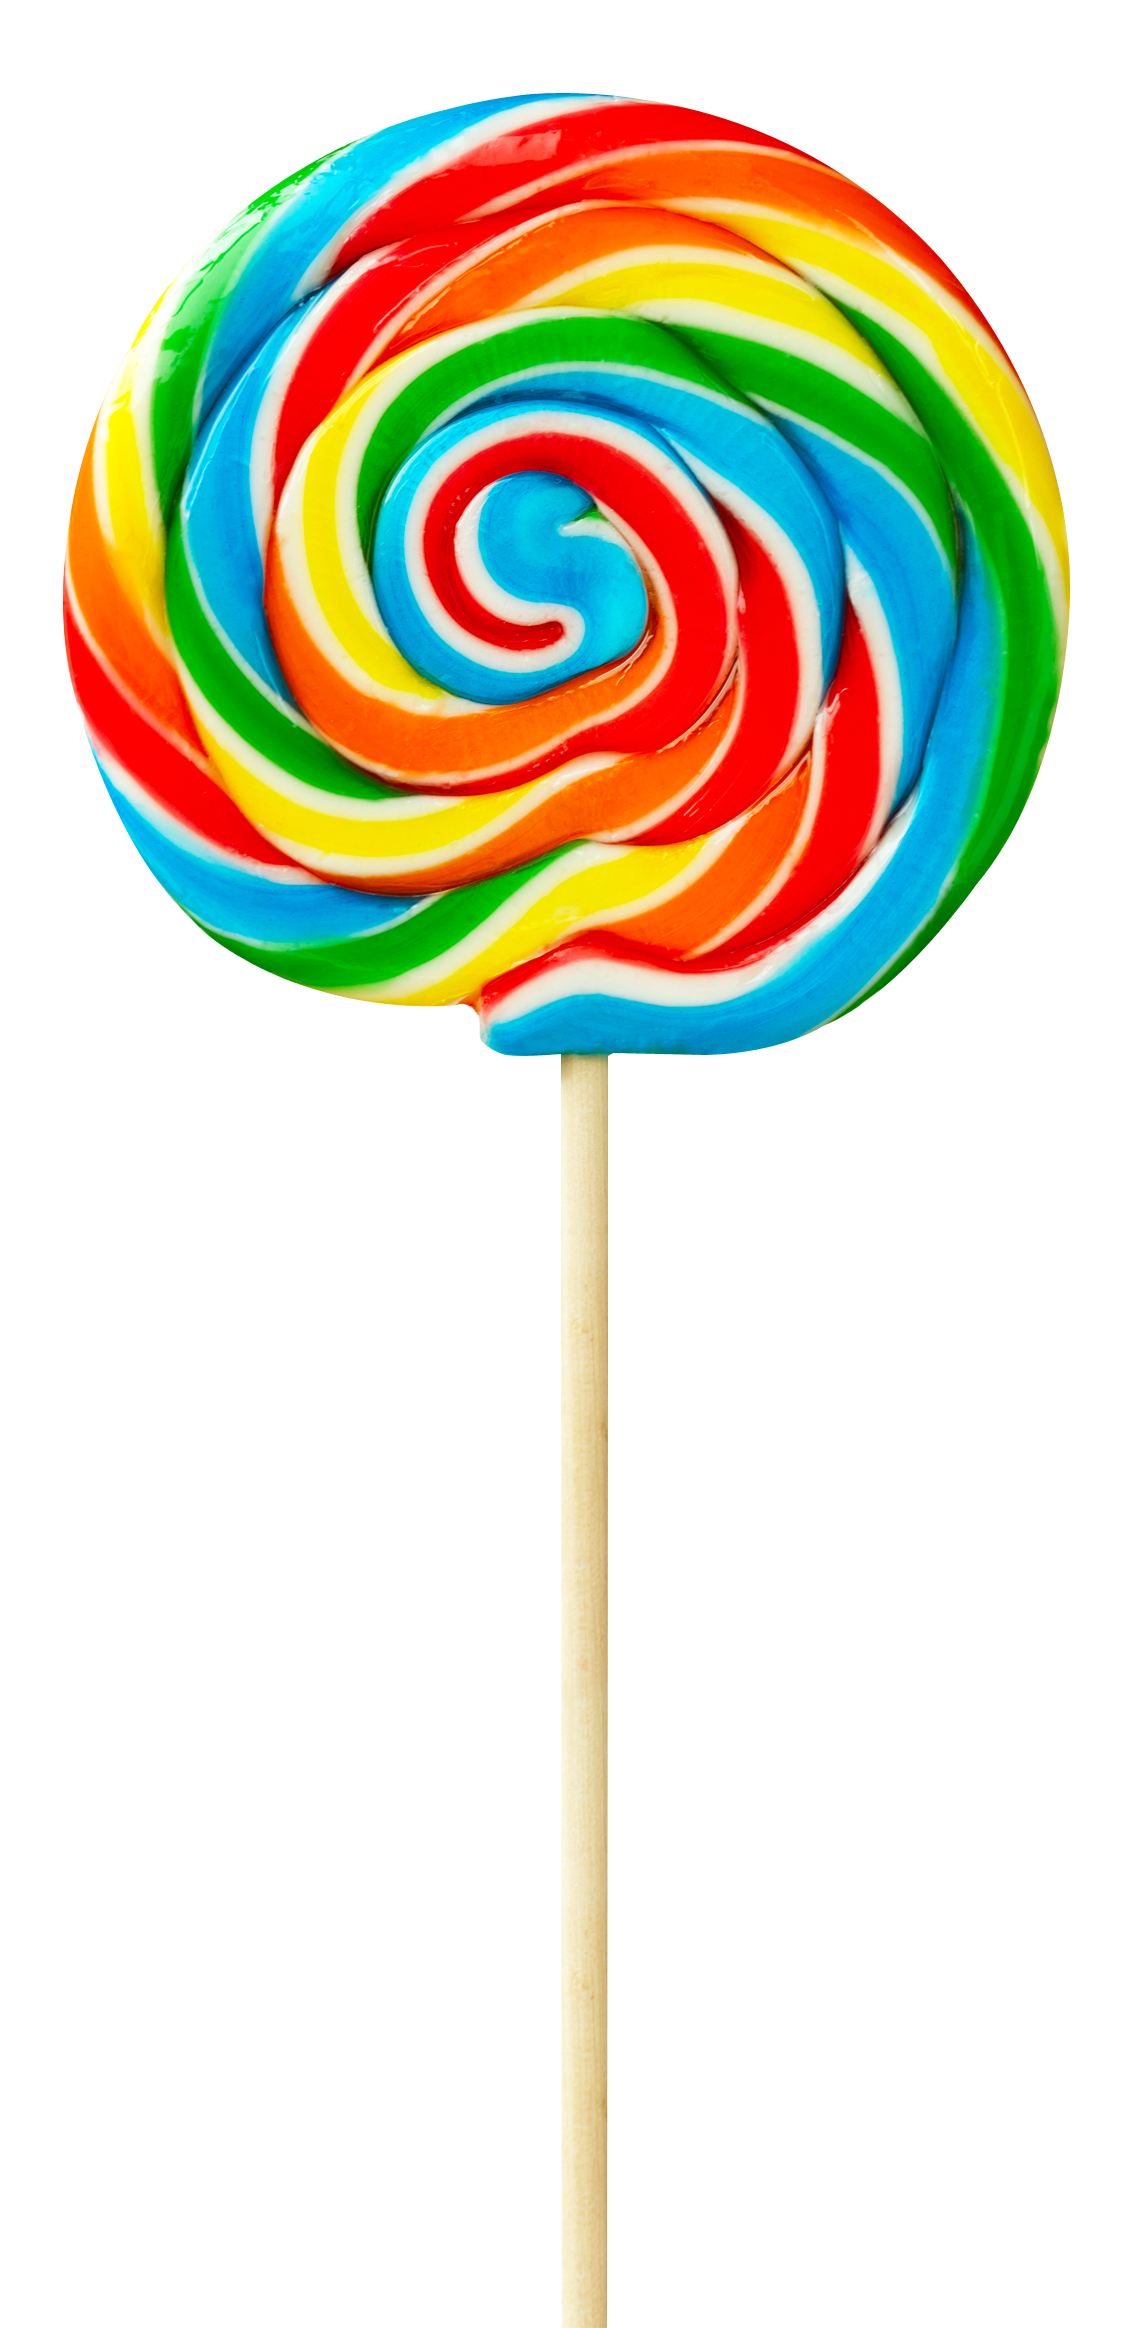 Colorful Lollipop Png Transparent Image - Lollipop, Transparent background PNG HD thumbnail